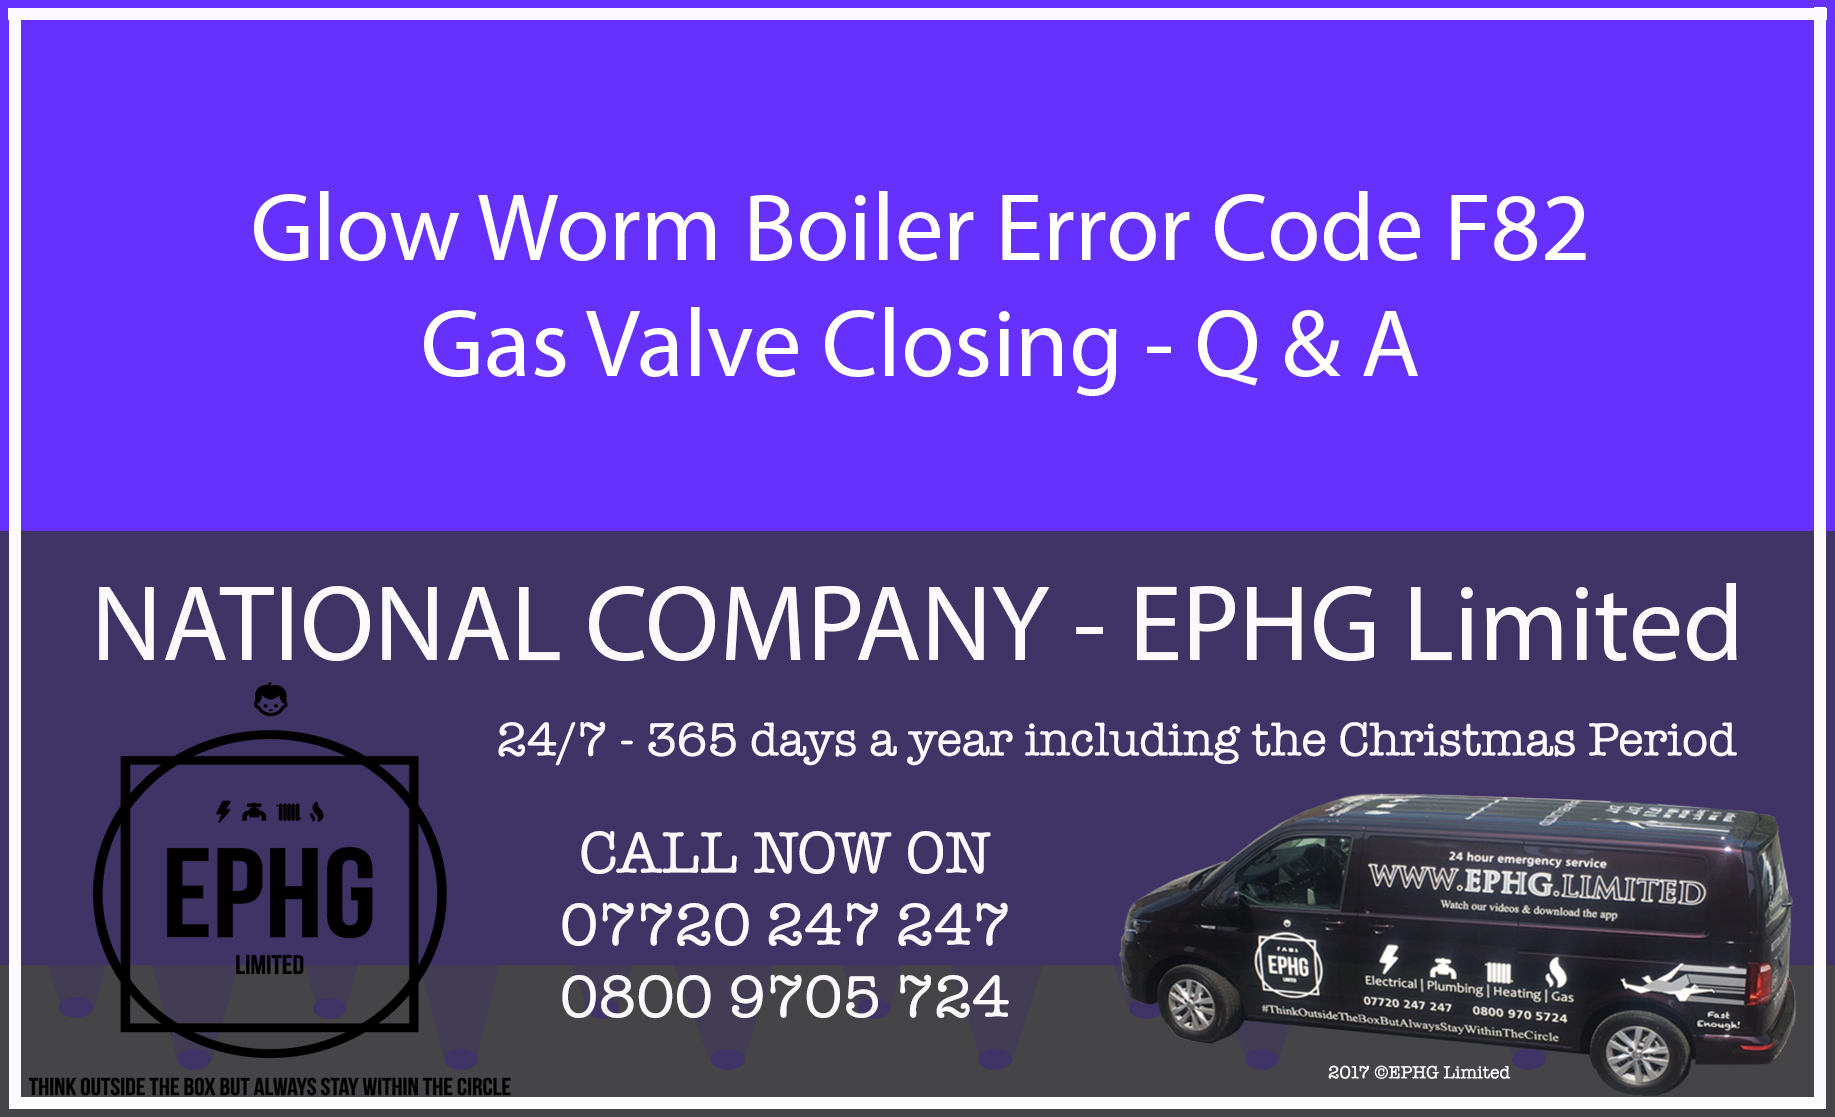 Glow-Worm boiler error code F.82